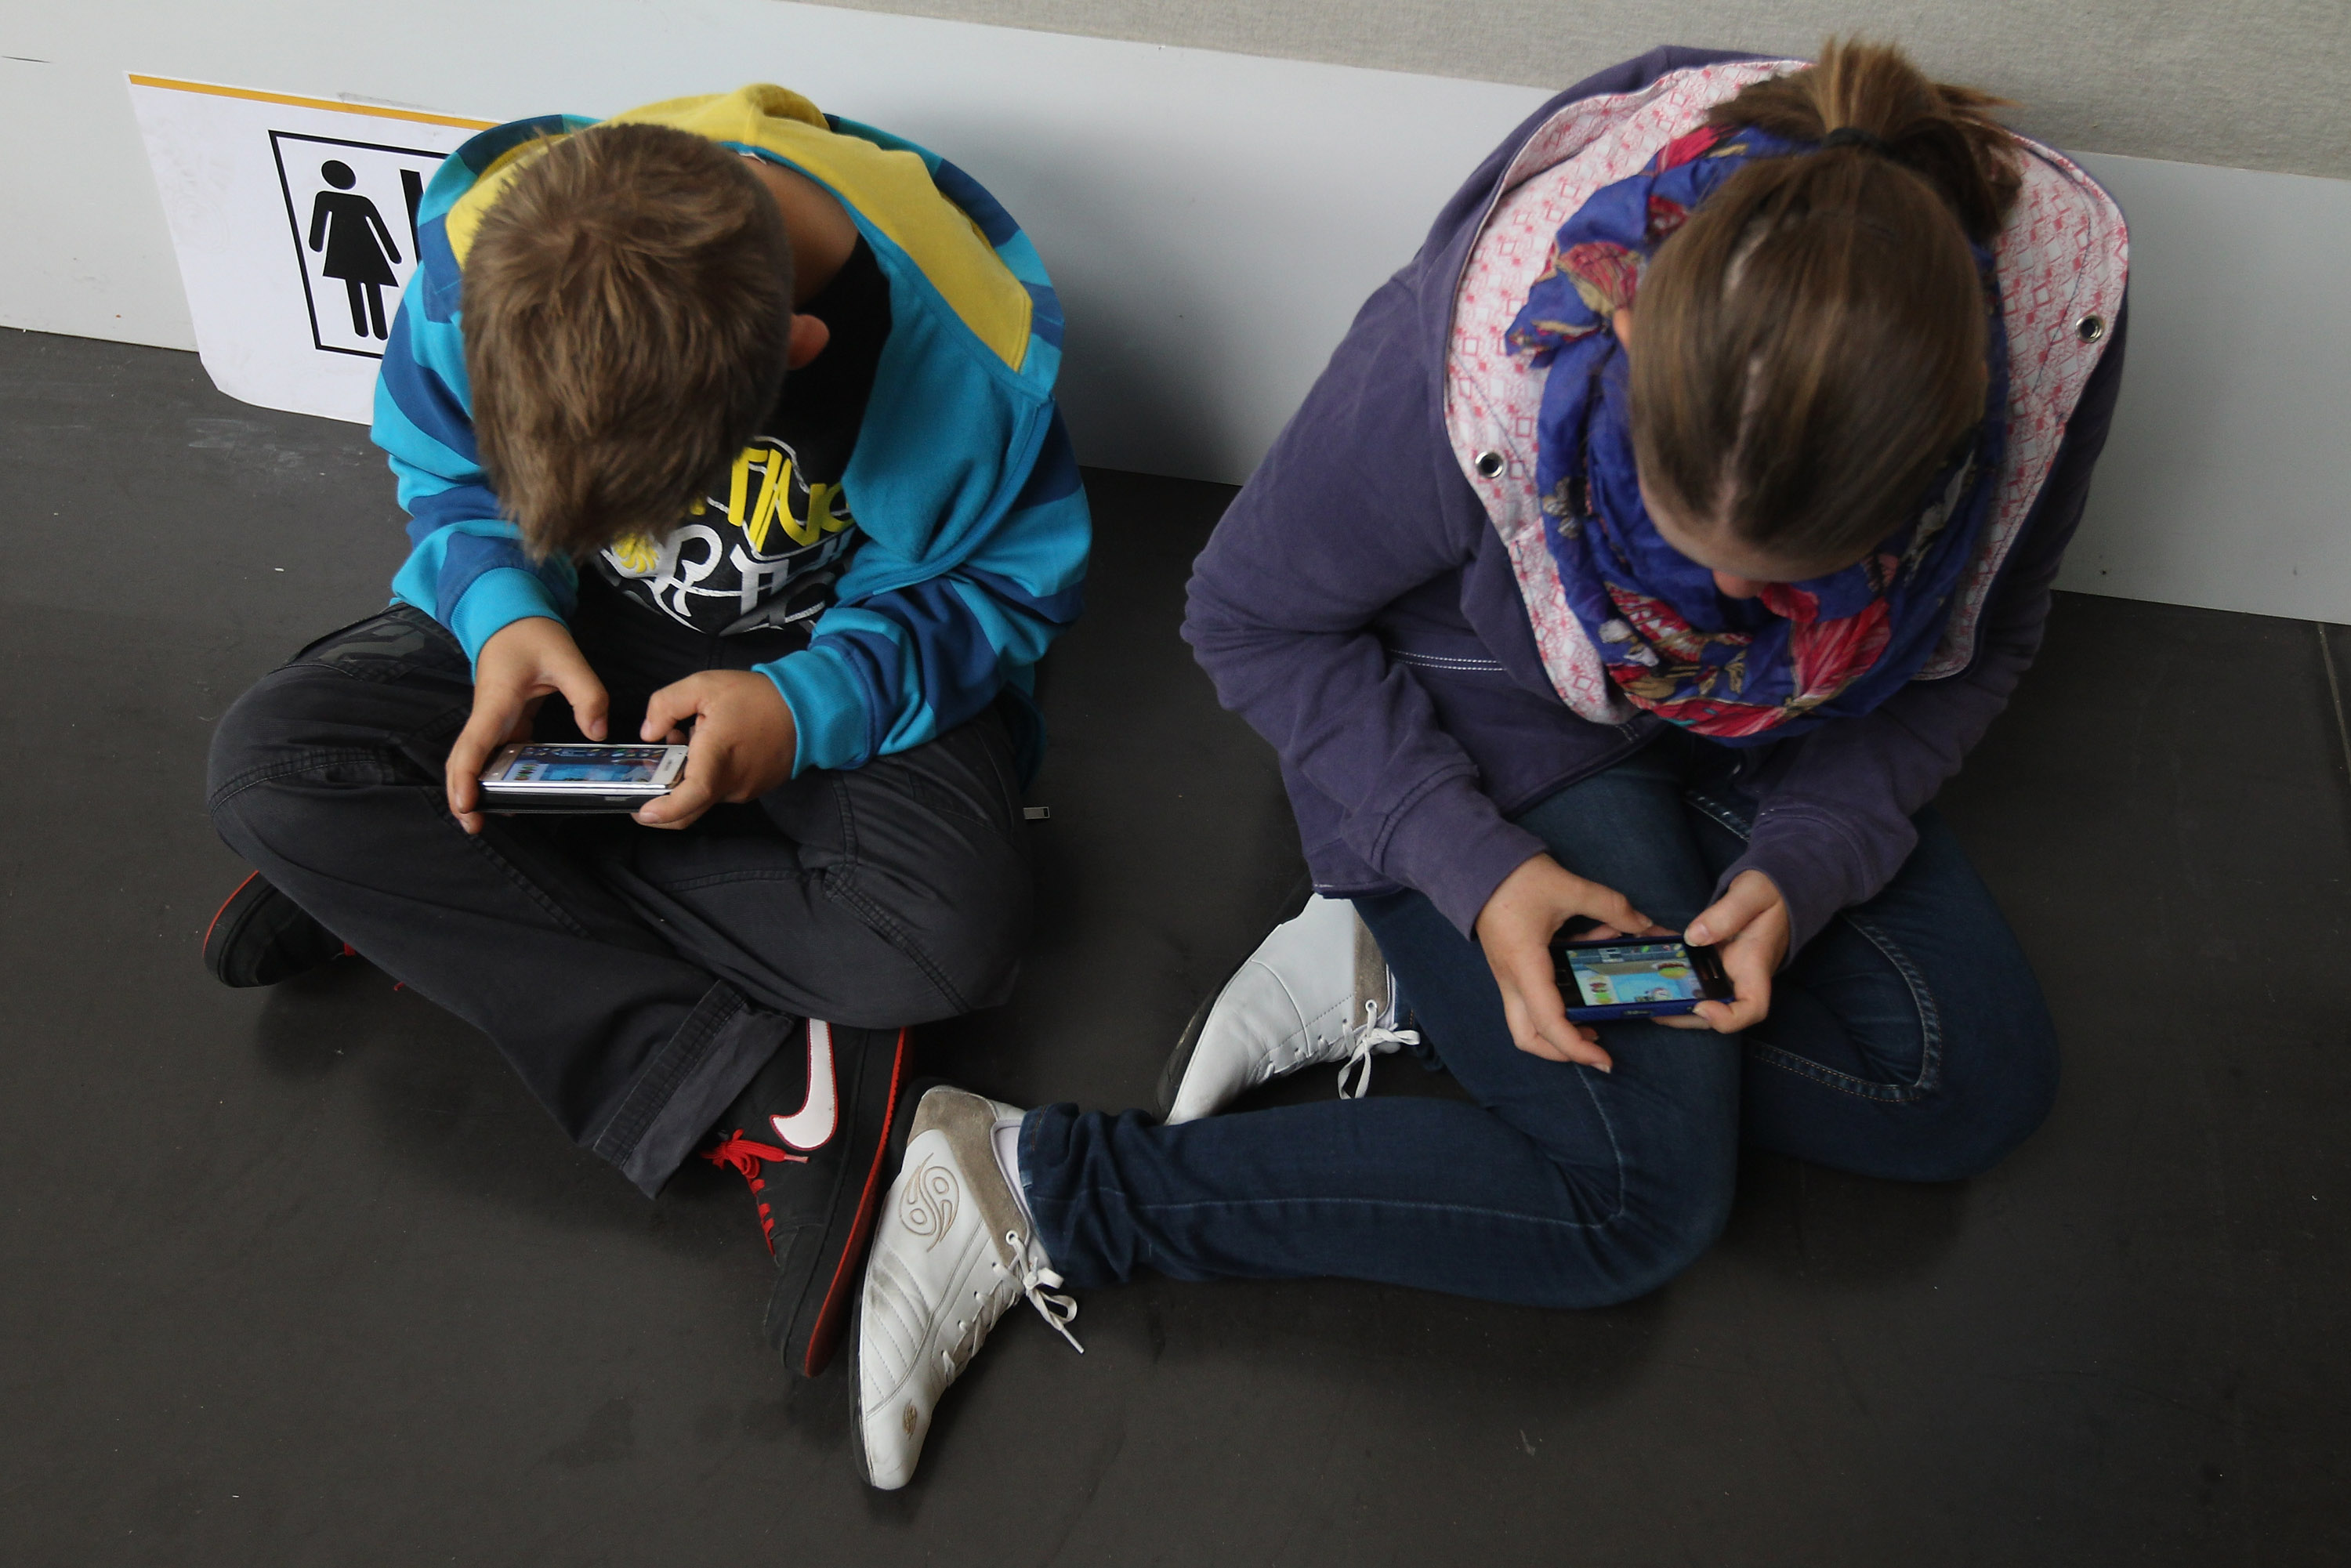 Experte schreibt Smartphone-Spielen besonders hohes Suchtpotenzial zu – WHO stuft Sucht nach Videospielen als Krankheit ein